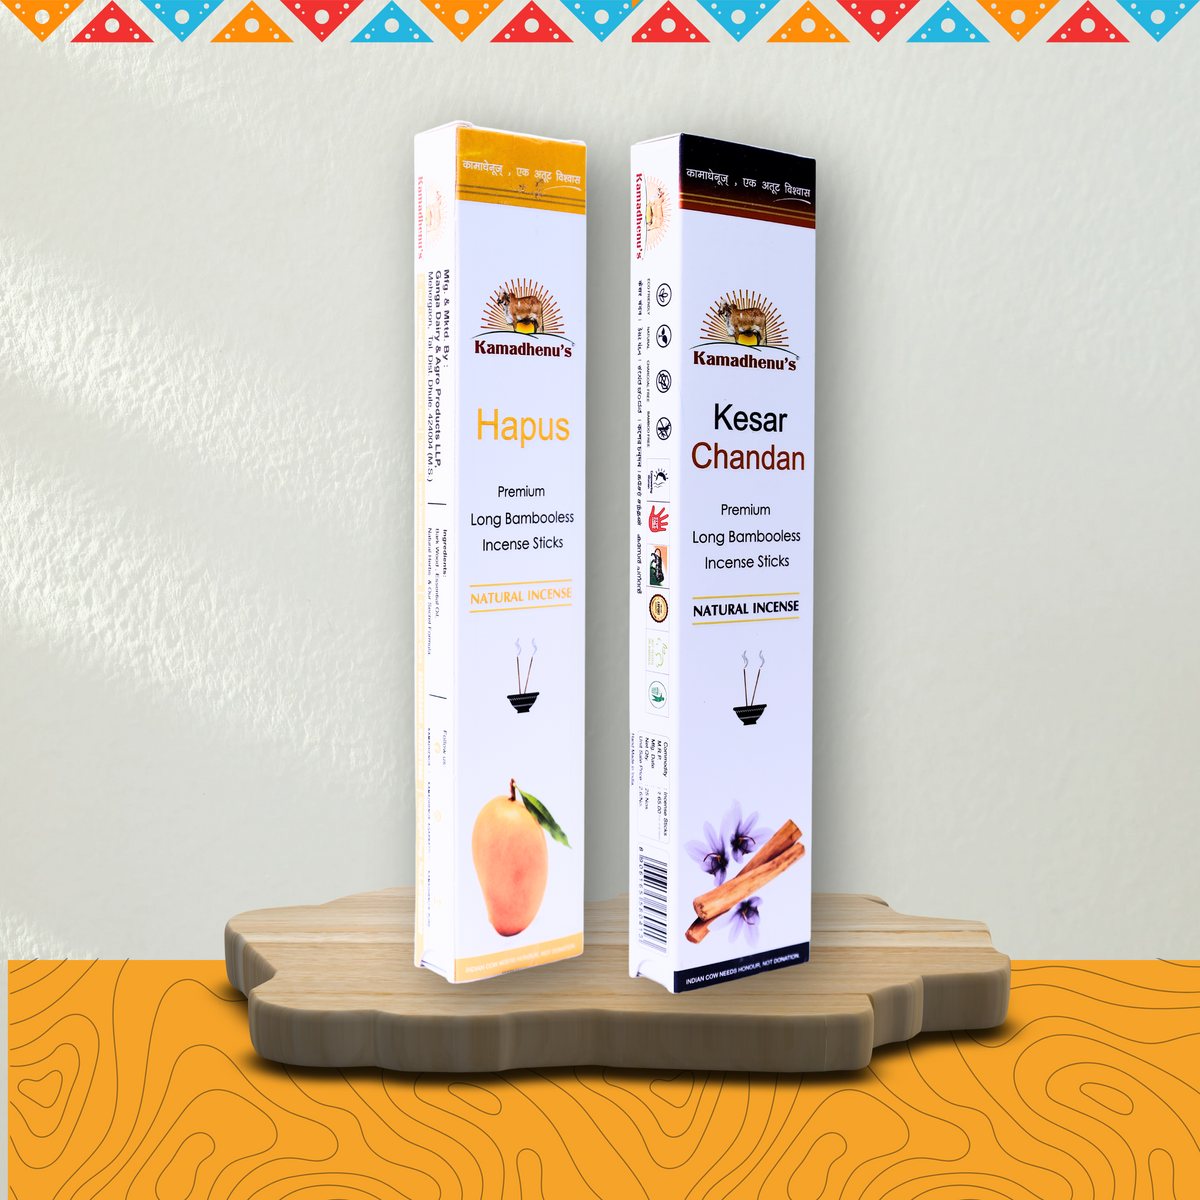 Kamadhenu's Premium Long Bambooless Incense Sticks Combo (Hapus And Kesar Chandan)